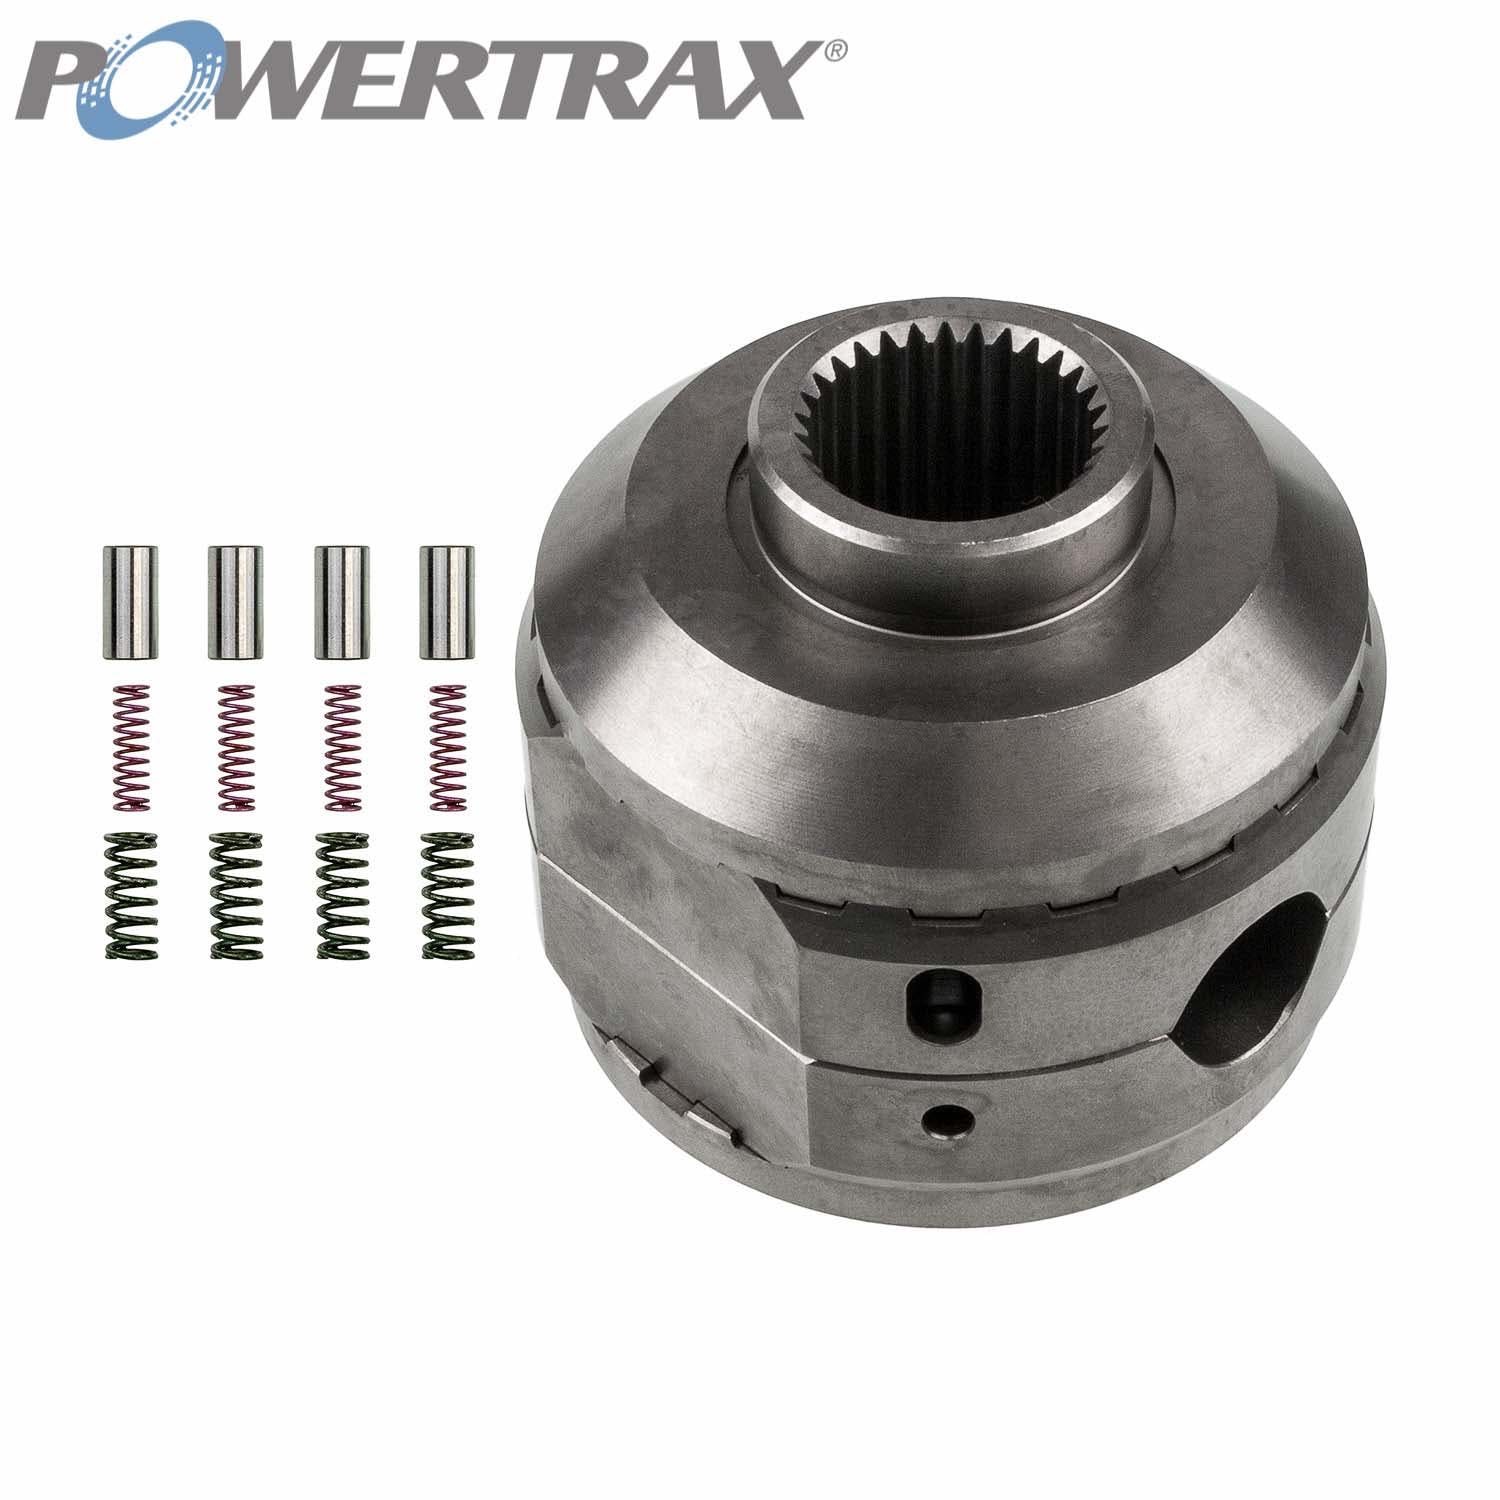 PowerTrax 2510-LR Lock Right Locker